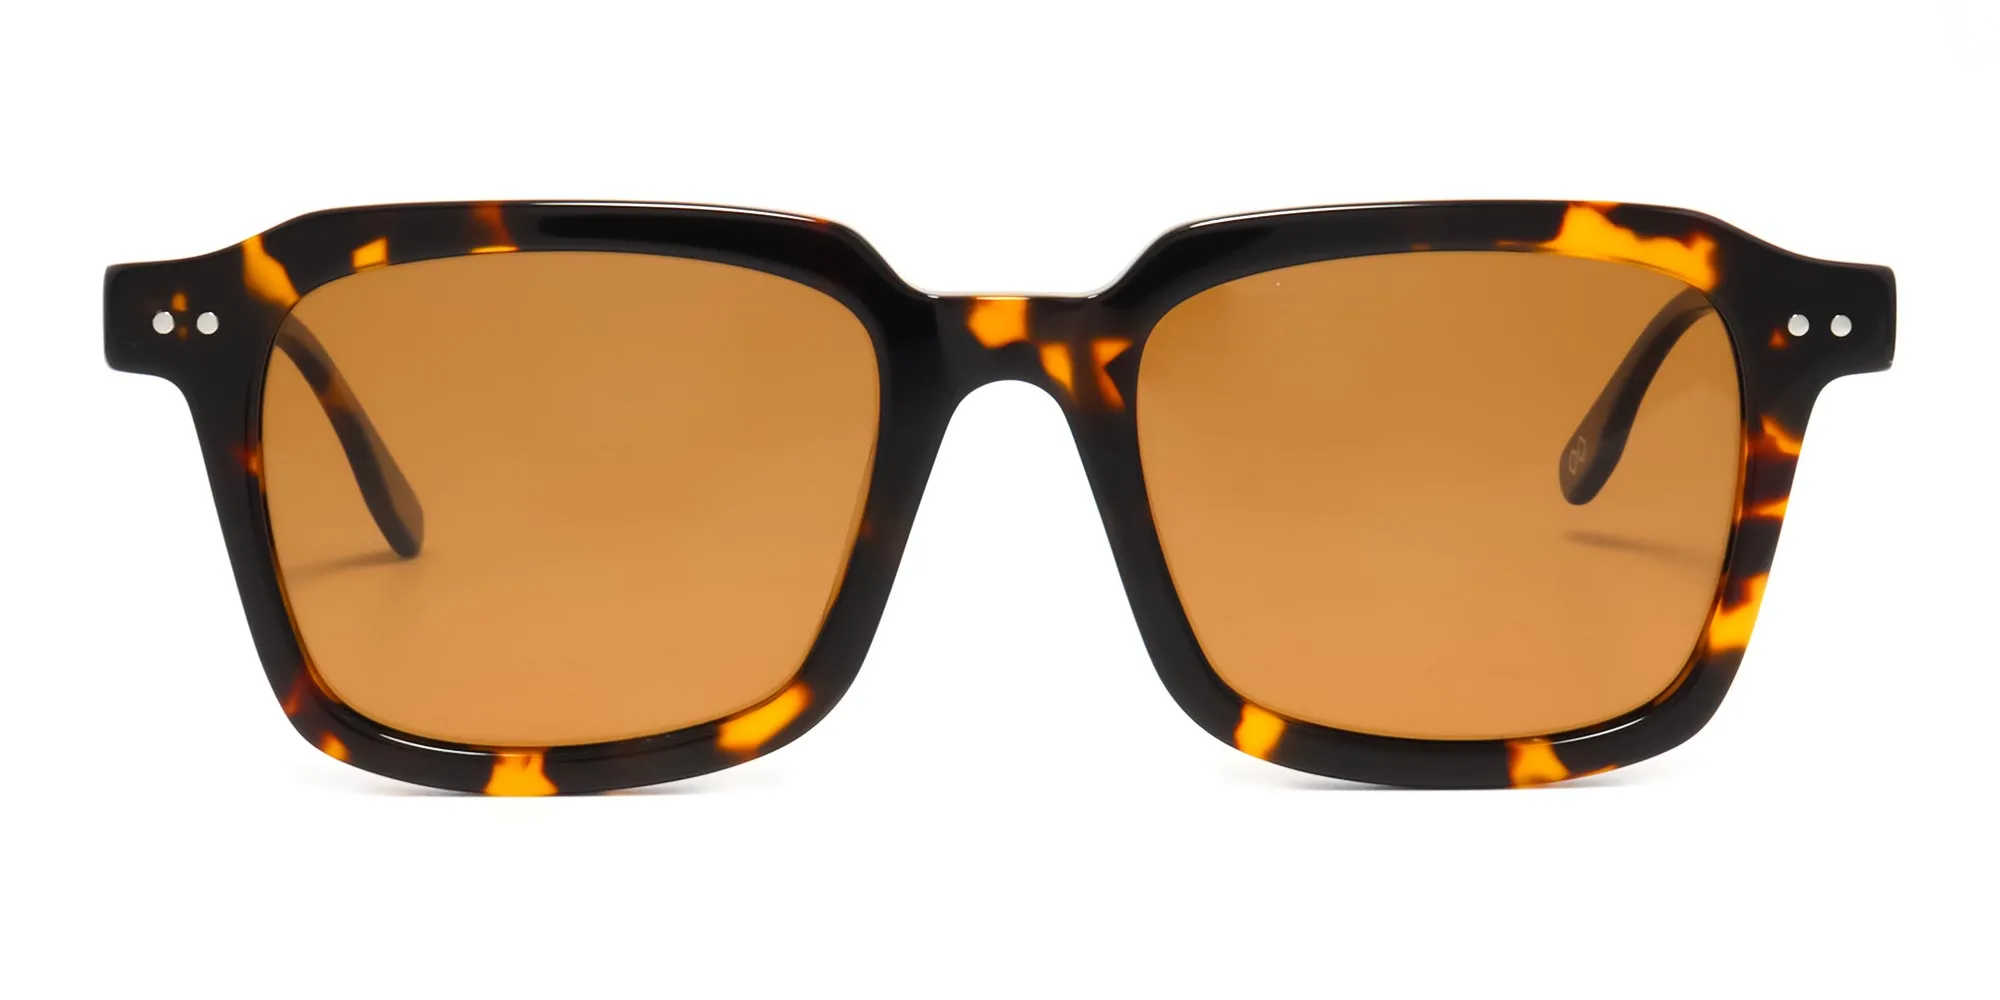 designer tortoise shell sunglasses